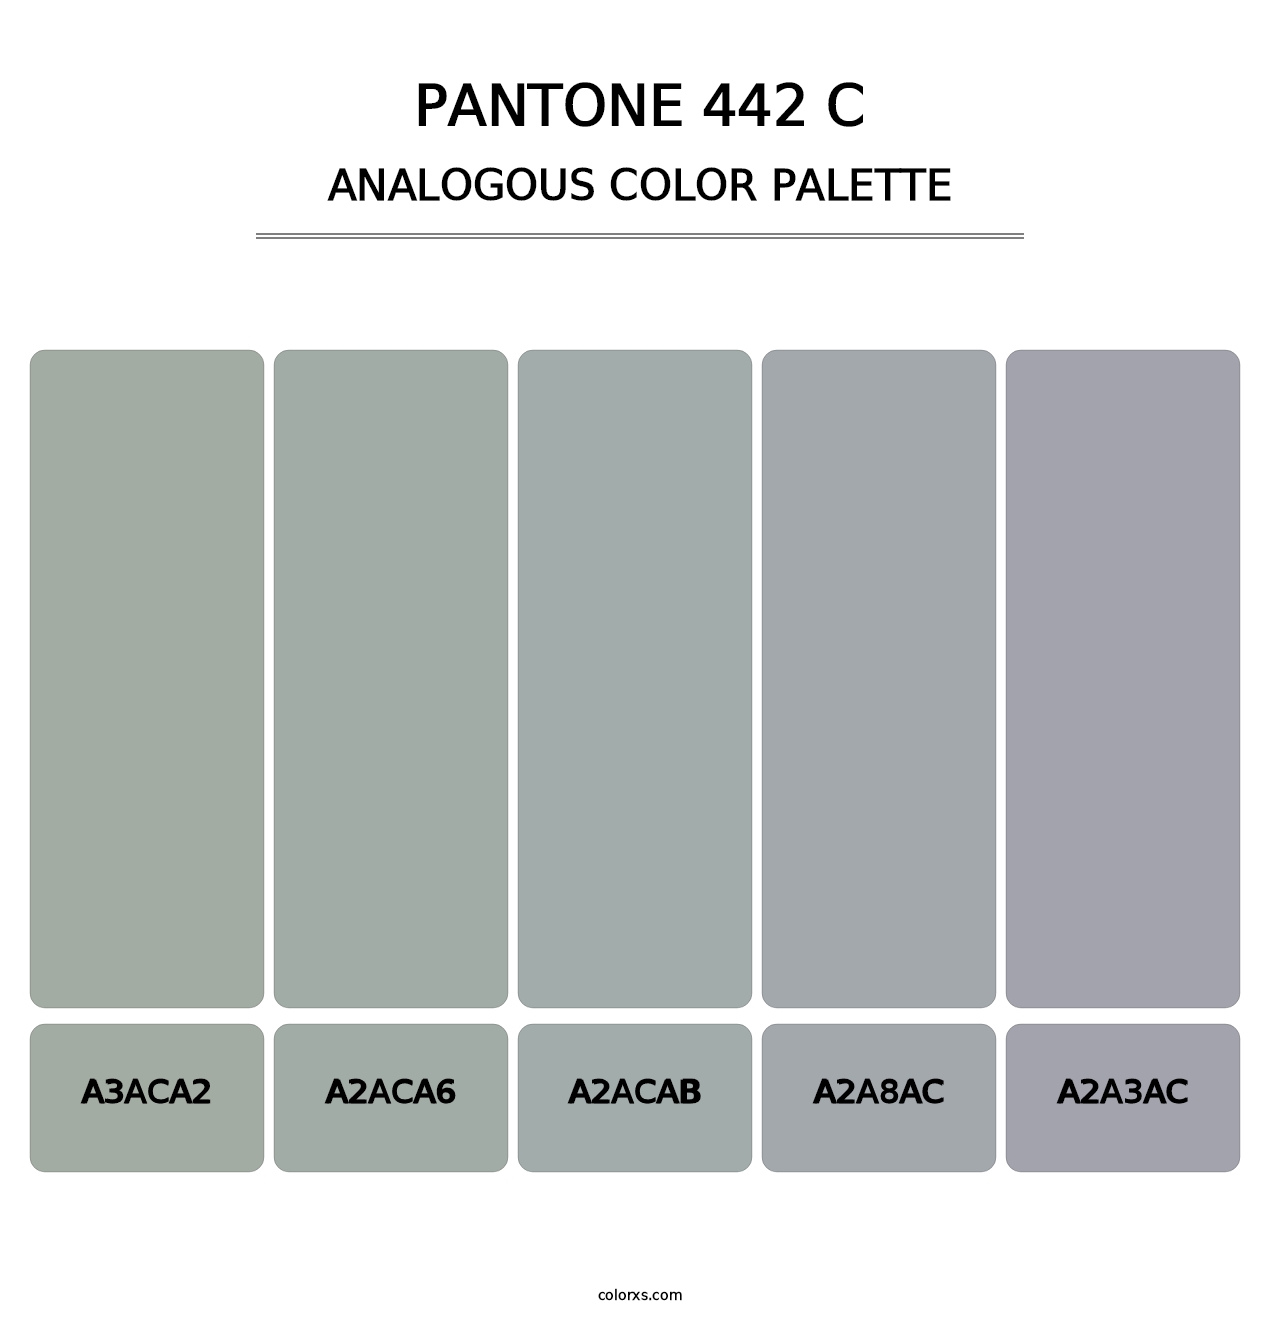 PANTONE 442 C - Analogous Color Palette